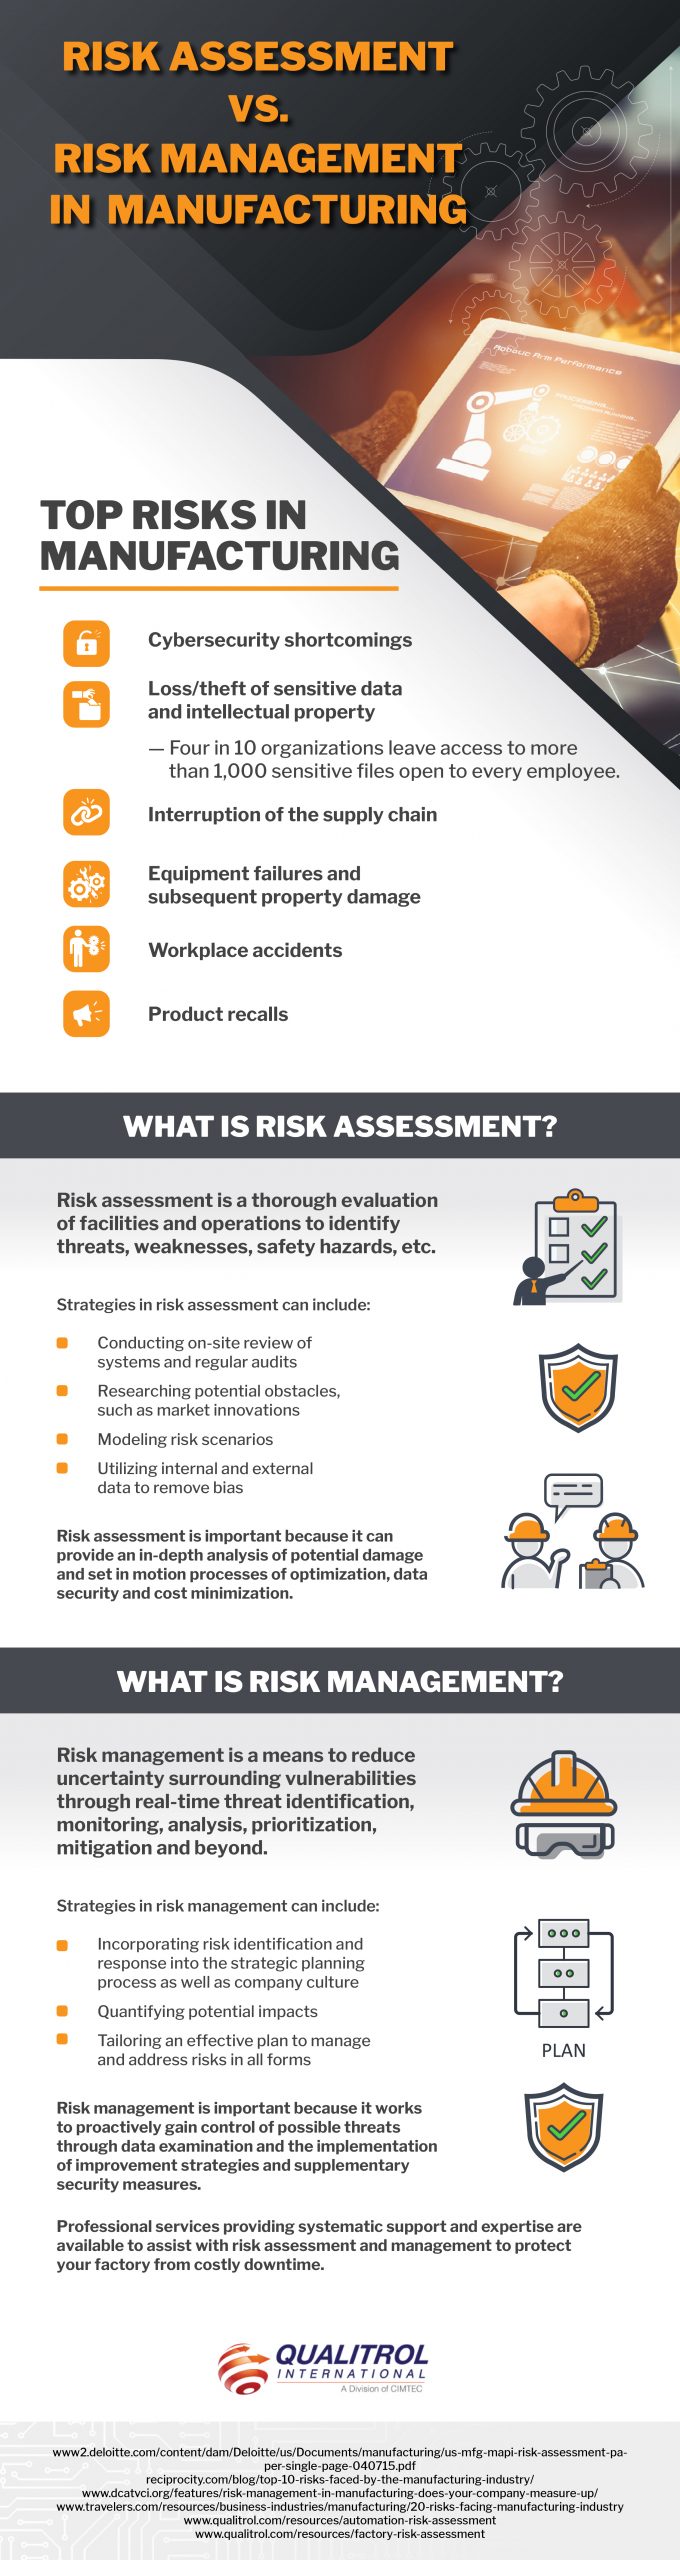 risk assessment vs risk management infographic qualitrol